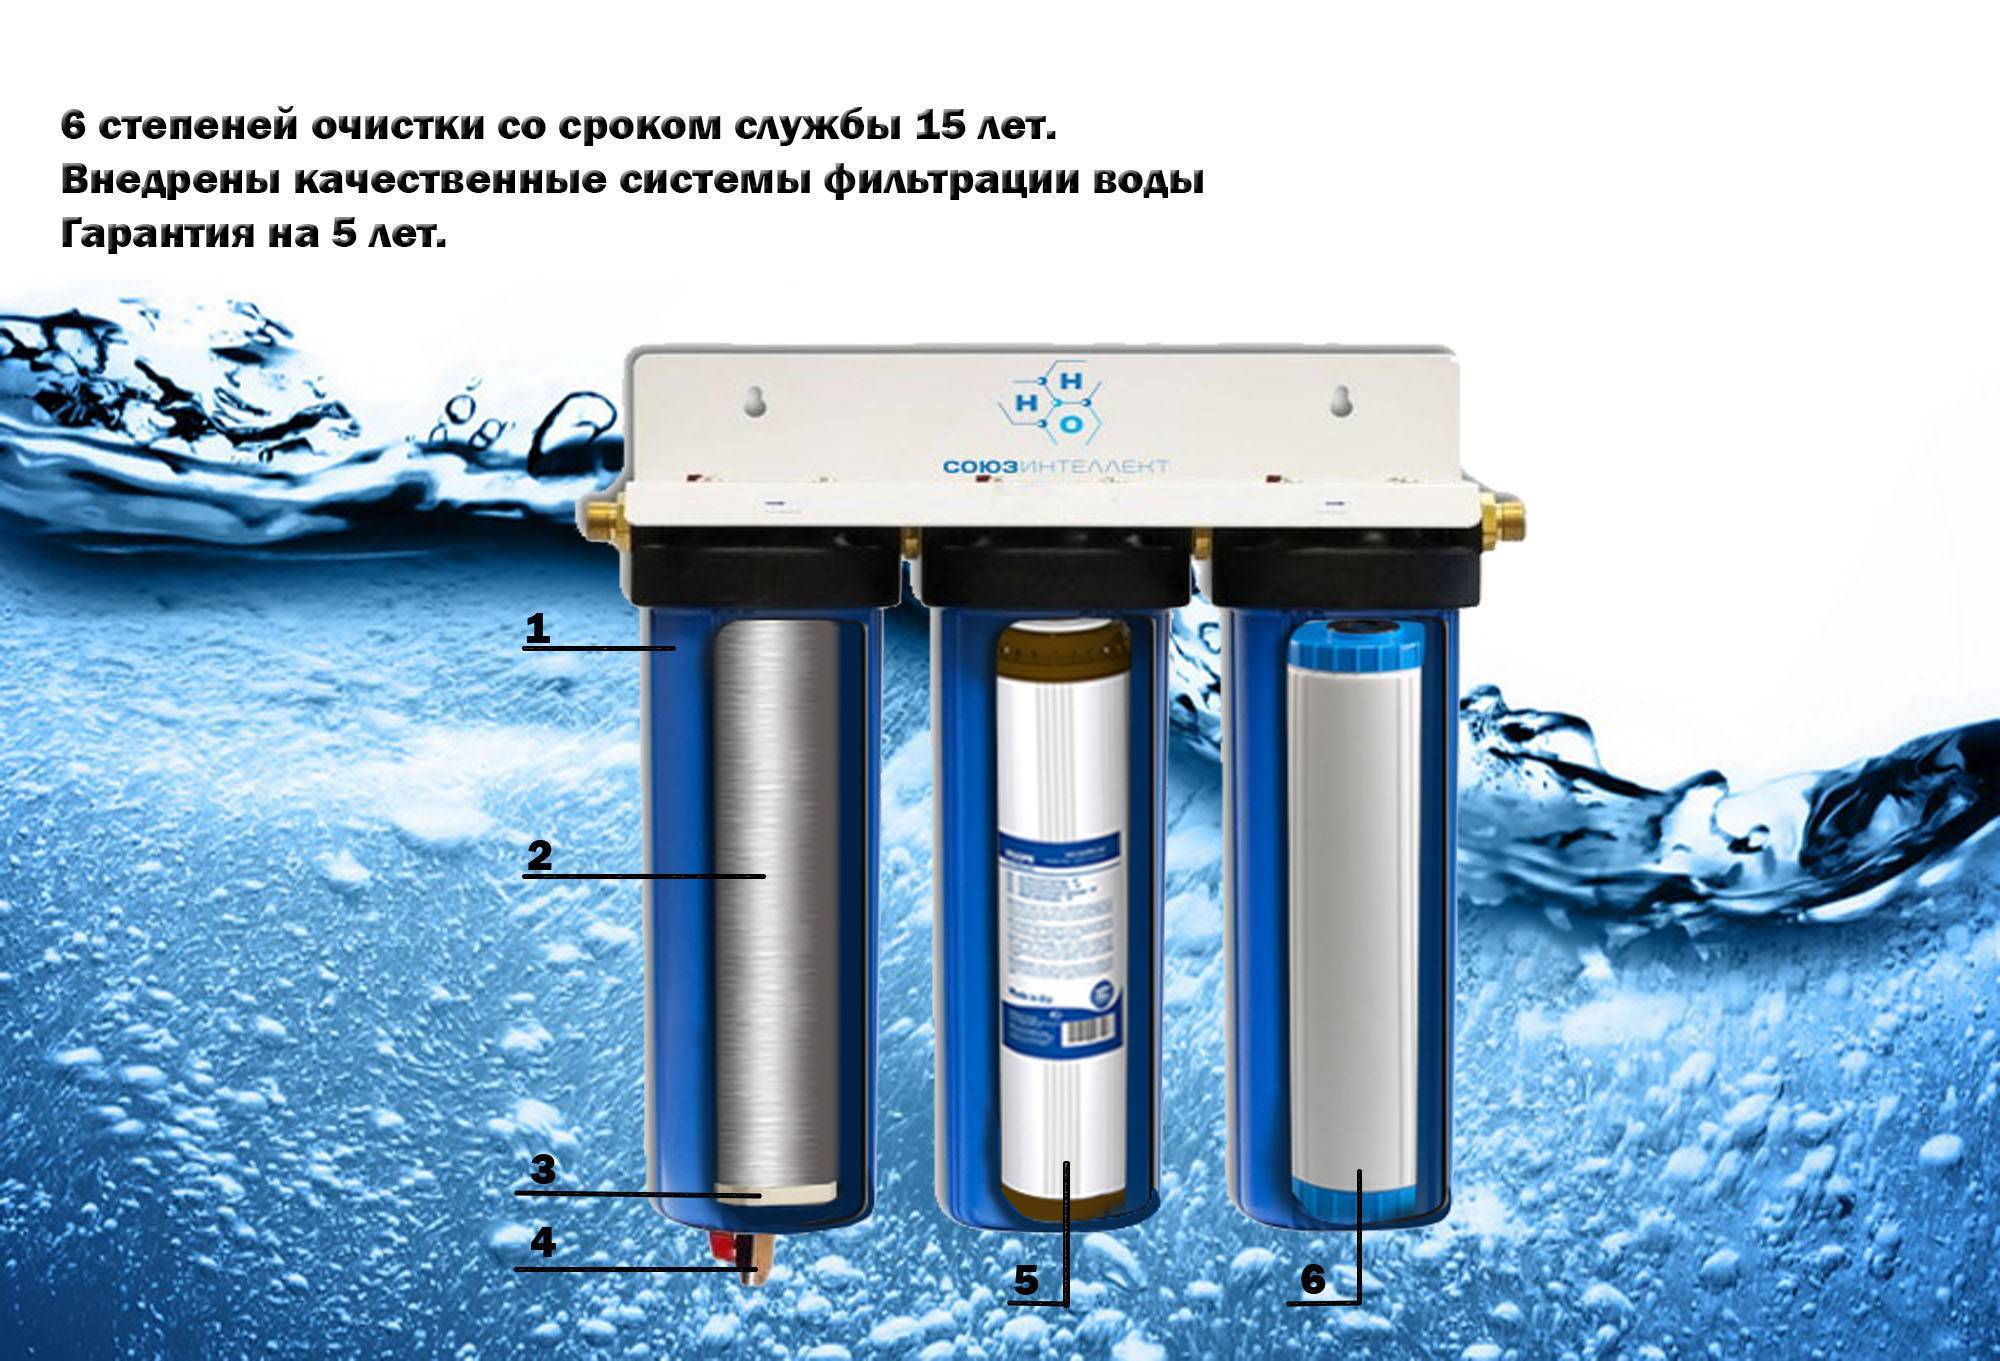 Купить фильтр для воды от извести. Аурус фильтр для воды. Титановый фильтр для очистки воды. Титановые фильтры для очистки воды из скважины. Степени очистки воды фильтрами.